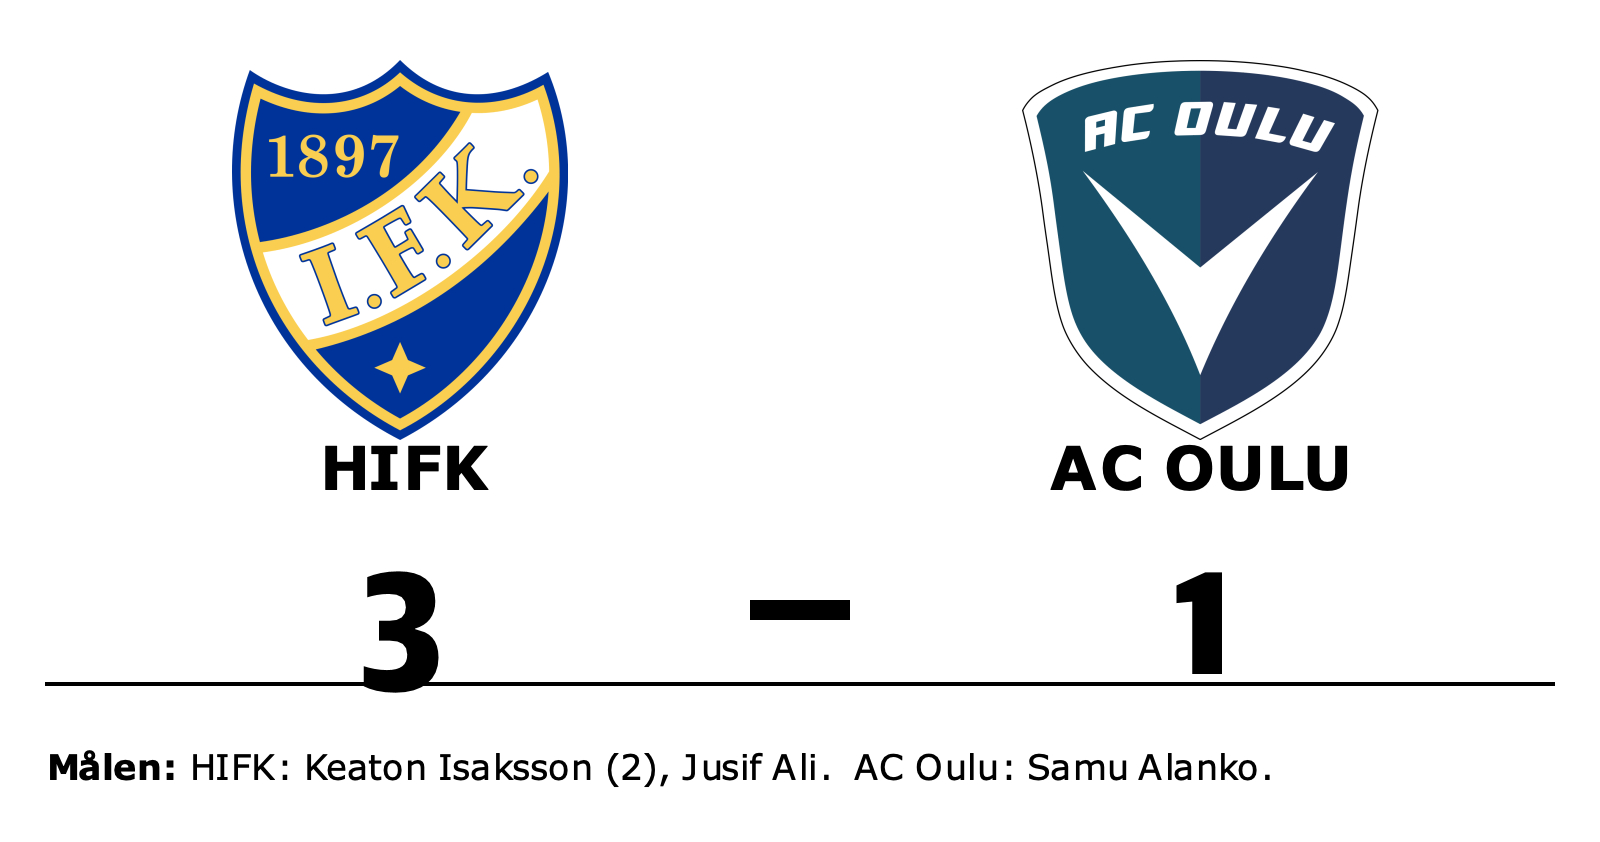 HIFK vann mot AC Oulu